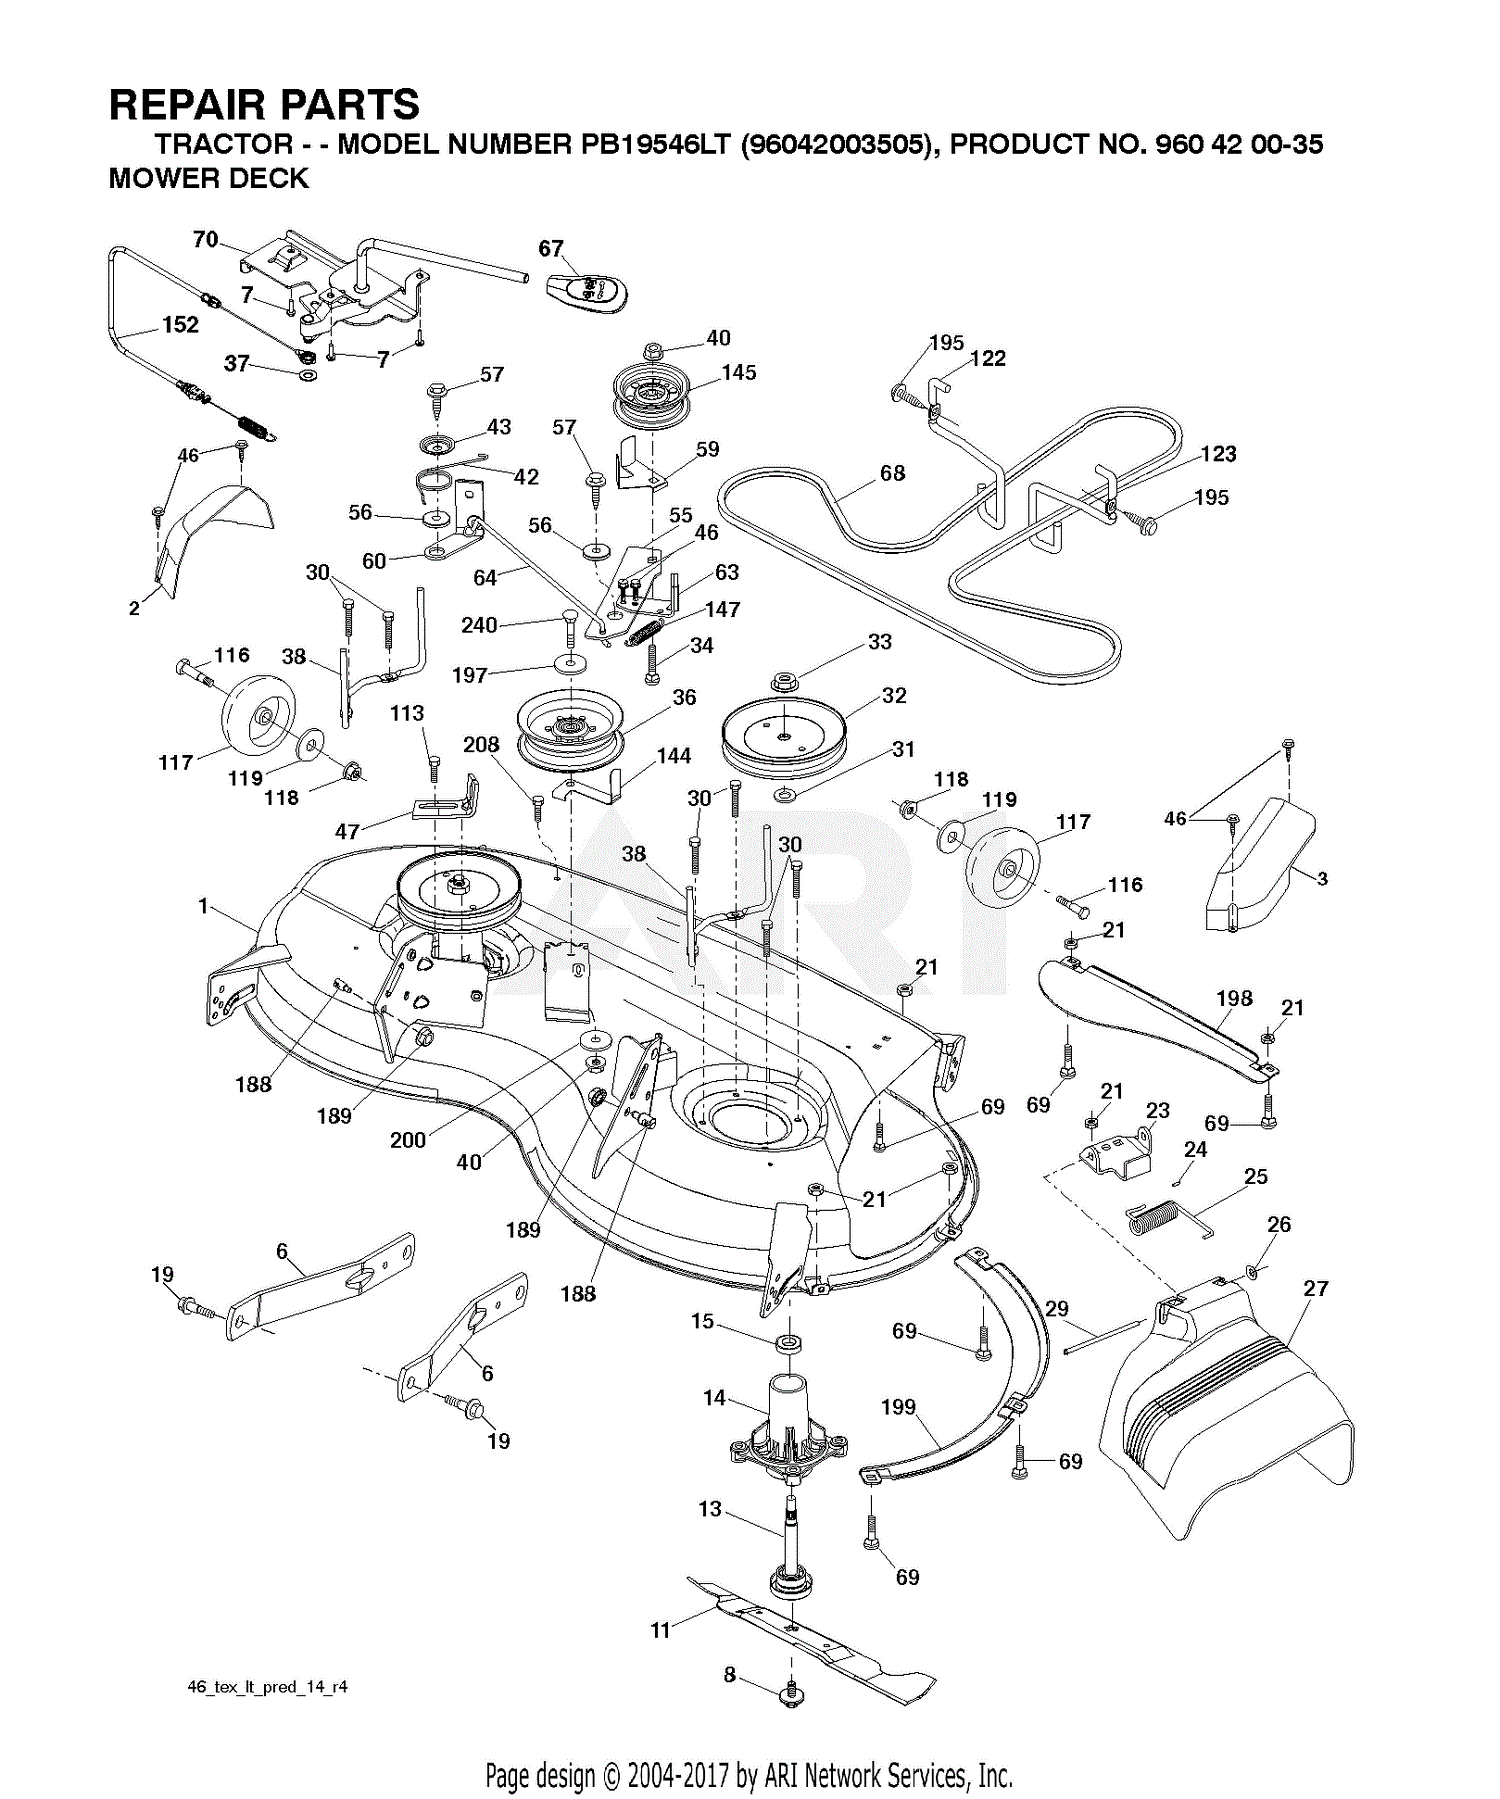 Poulan Riding Lawn Mower Parts Diagram Free Wiring Diagram